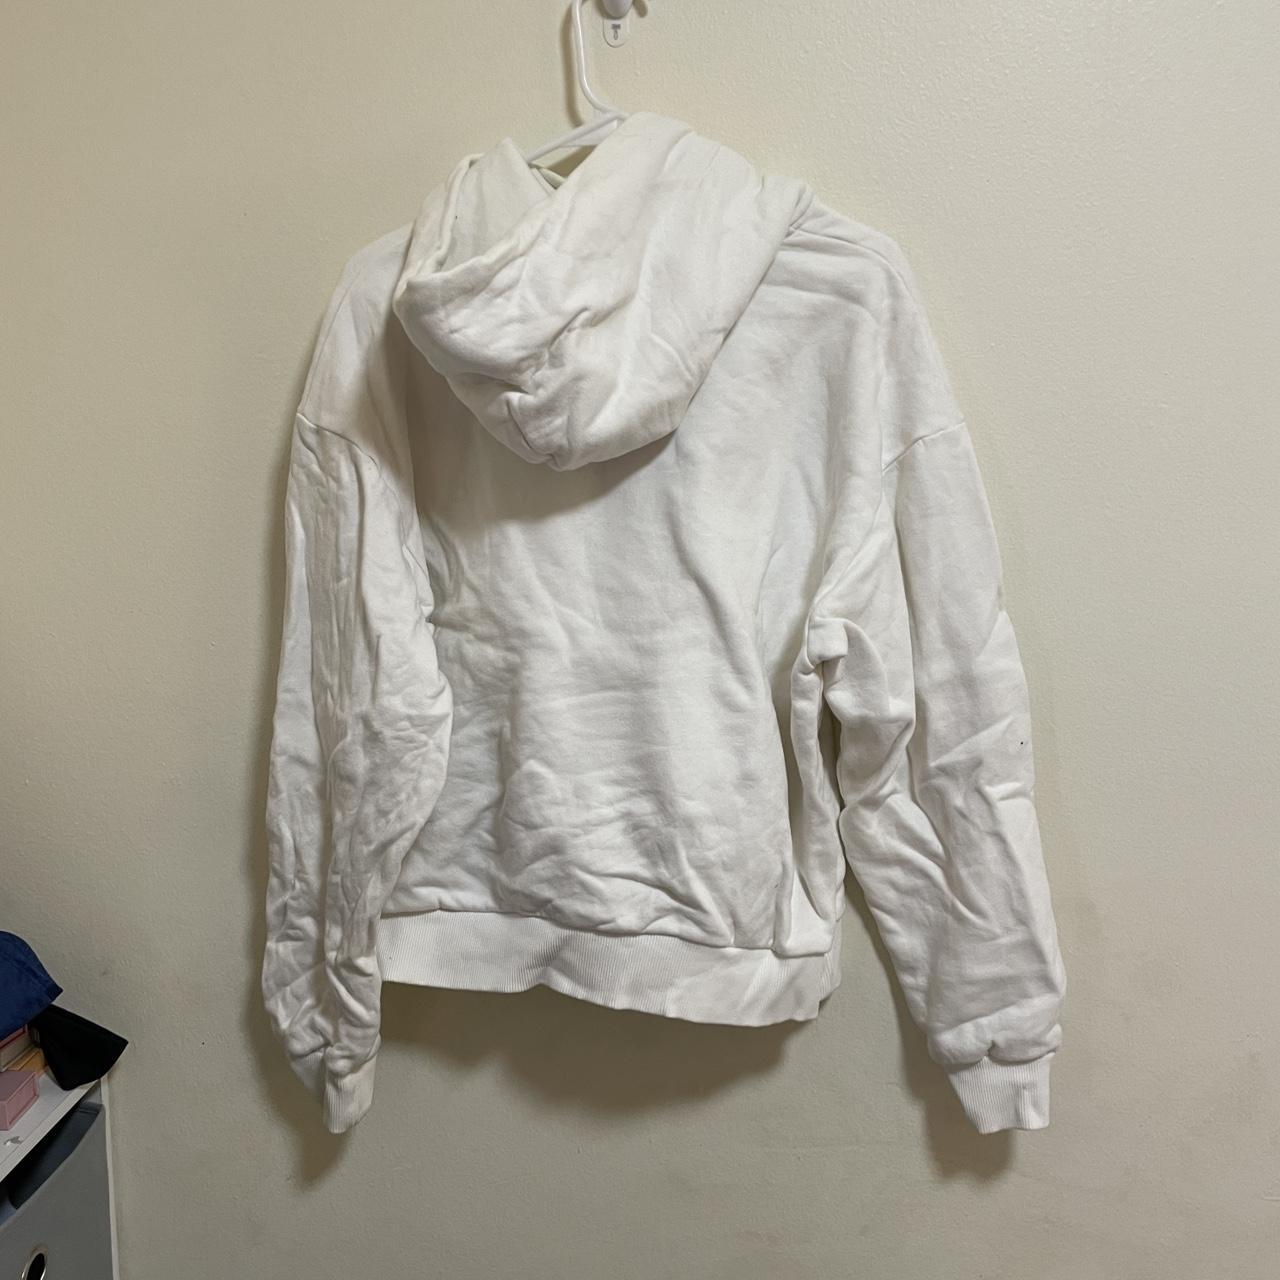 Pangaia Women's White and Cream Sweatshirt (4)